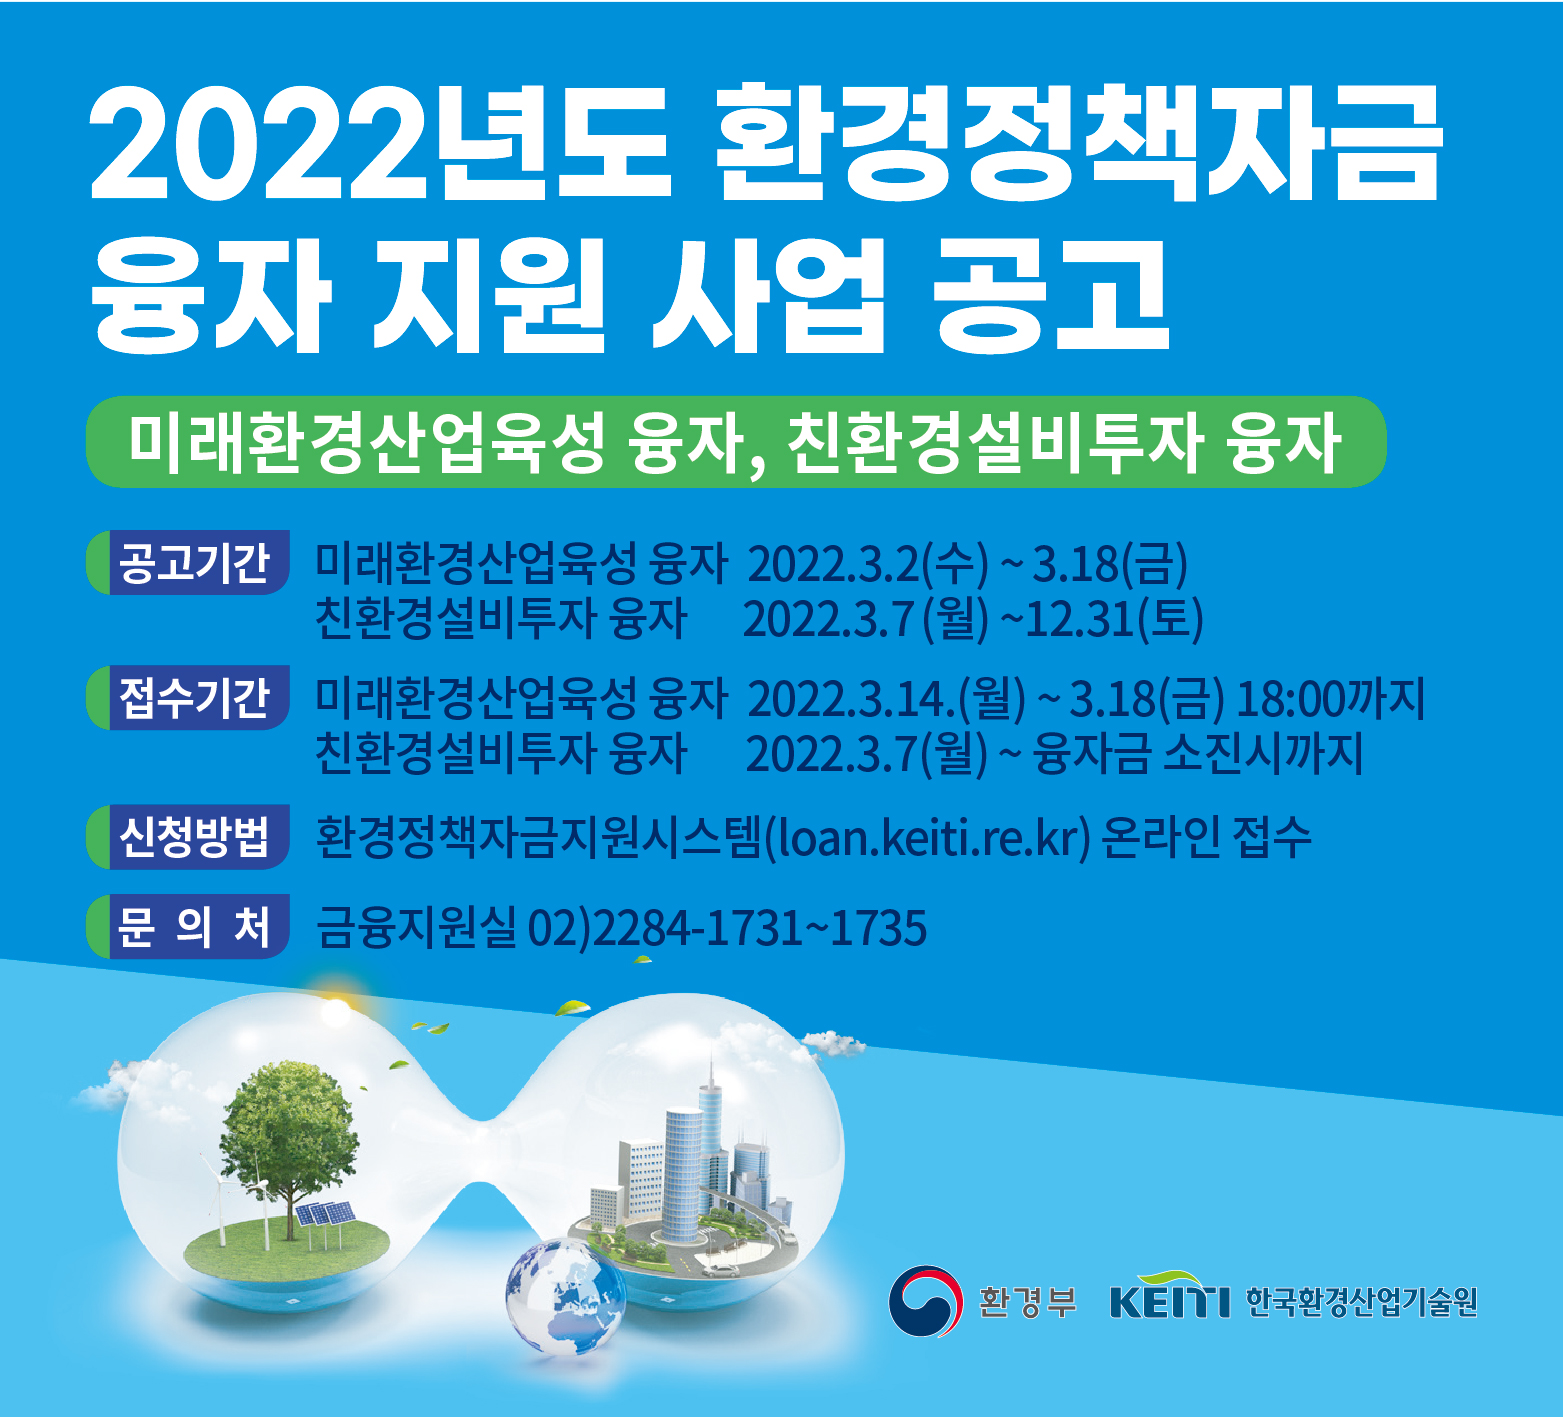 - 2022년도 환경정책자금 융자 지원 사업 공고
- 3월 7일~ 12월 31까지